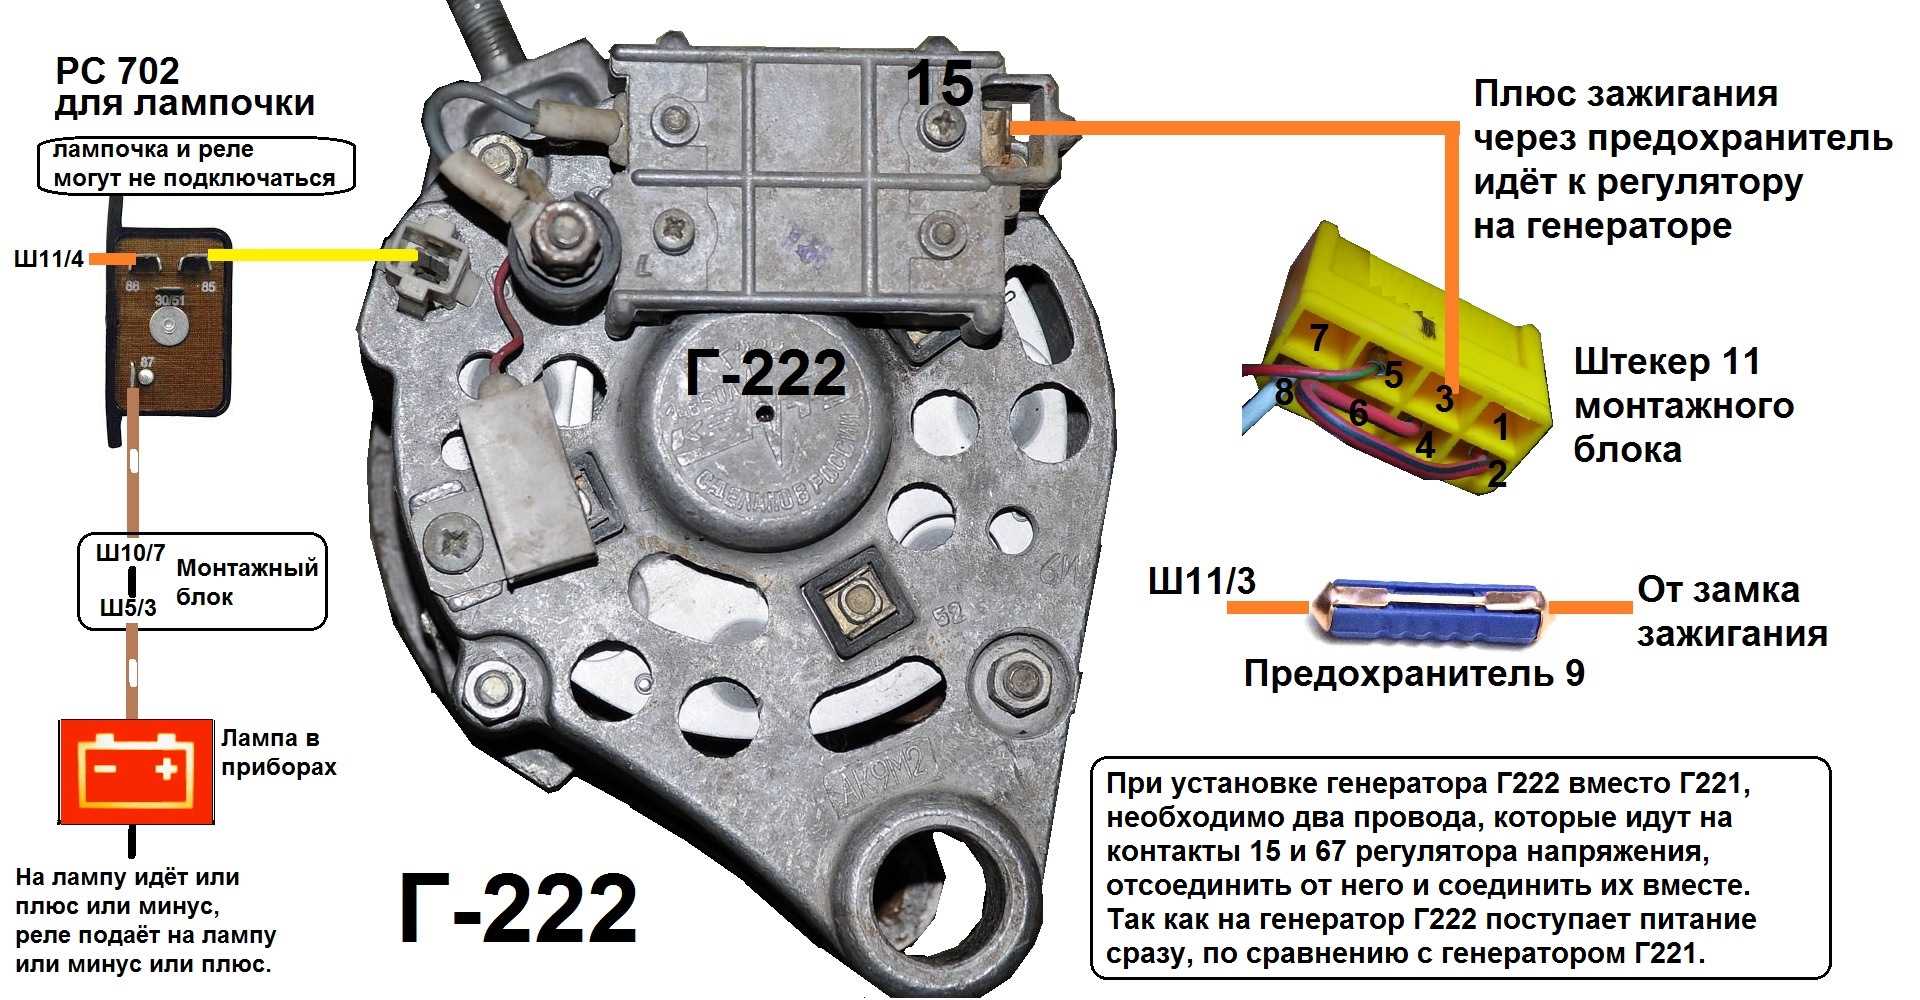 Электрическая схема генераторной установки ваз-2107 (карбюраторной и инжекторной)